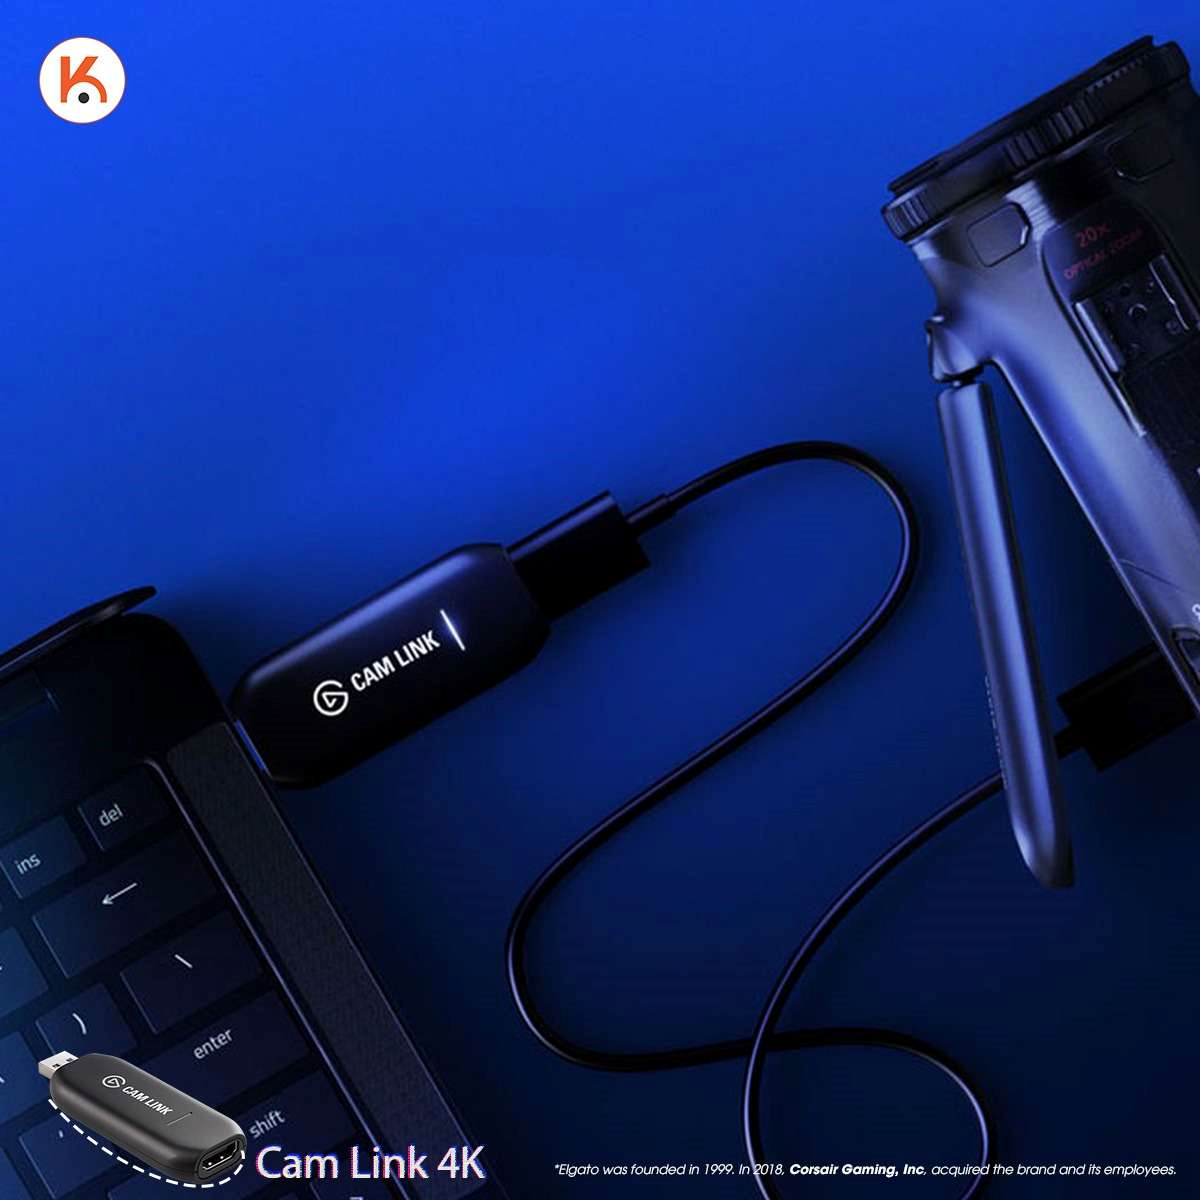 Combo Livestream Elgato là giải pháp tinh tế cho những người muốn tăng cường khả năng Livestream. Kết hợp giữa chiếc điều khiển Elgato Stream và các thành phần công nghệ khác, bao gồm HD60 S and Cam Link 4K, đây là giải pháp livestream tuyệt vời để ghi lại những trải nghiệm đáng nhớ của bạn.